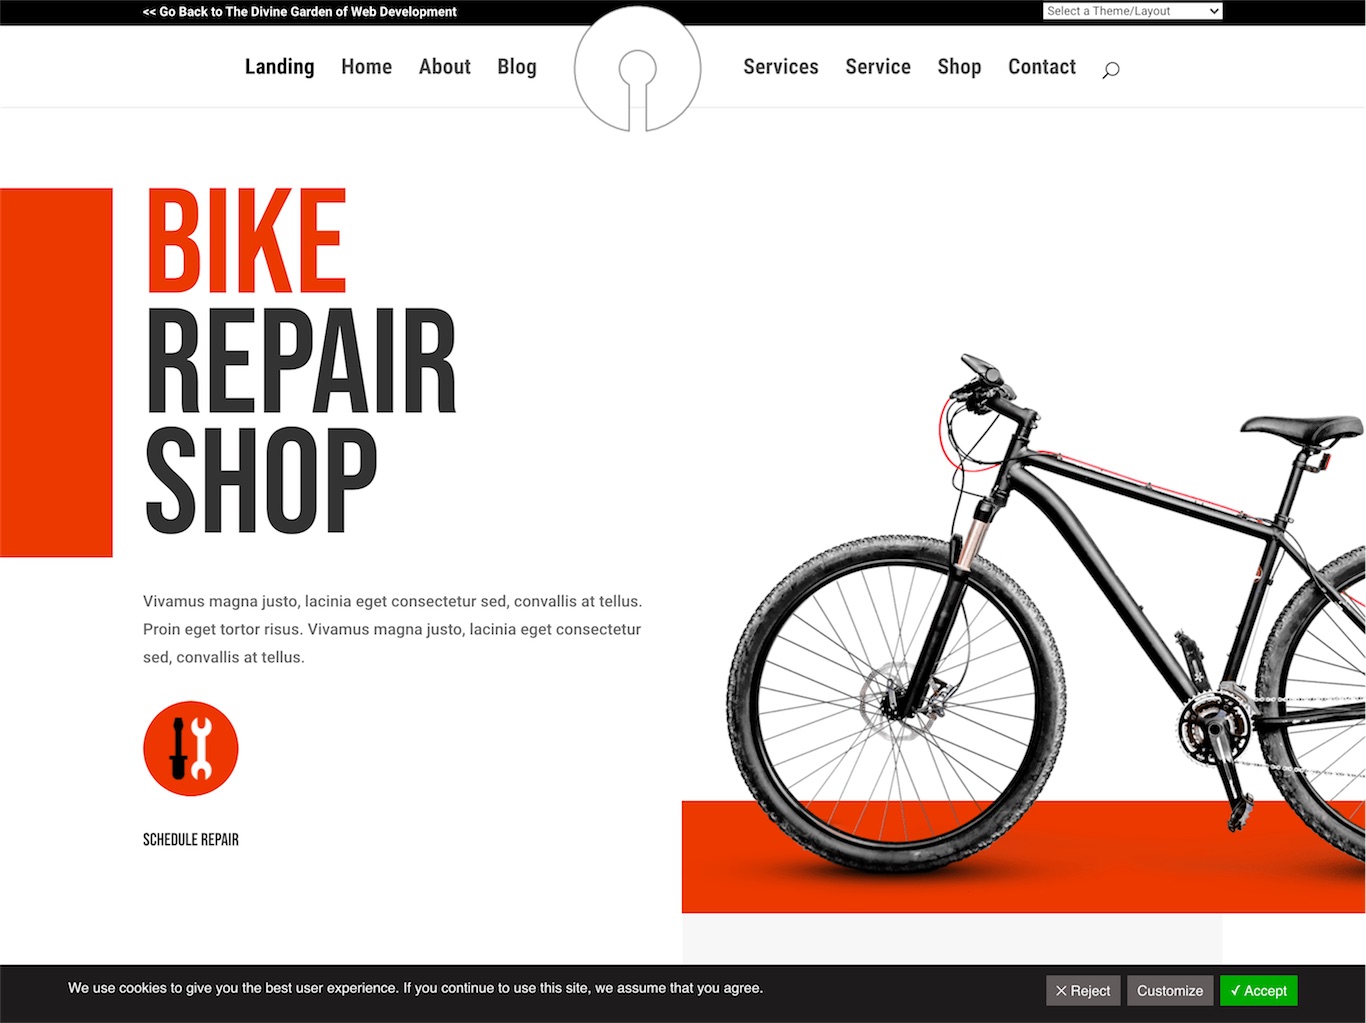 200 – Bike Repair